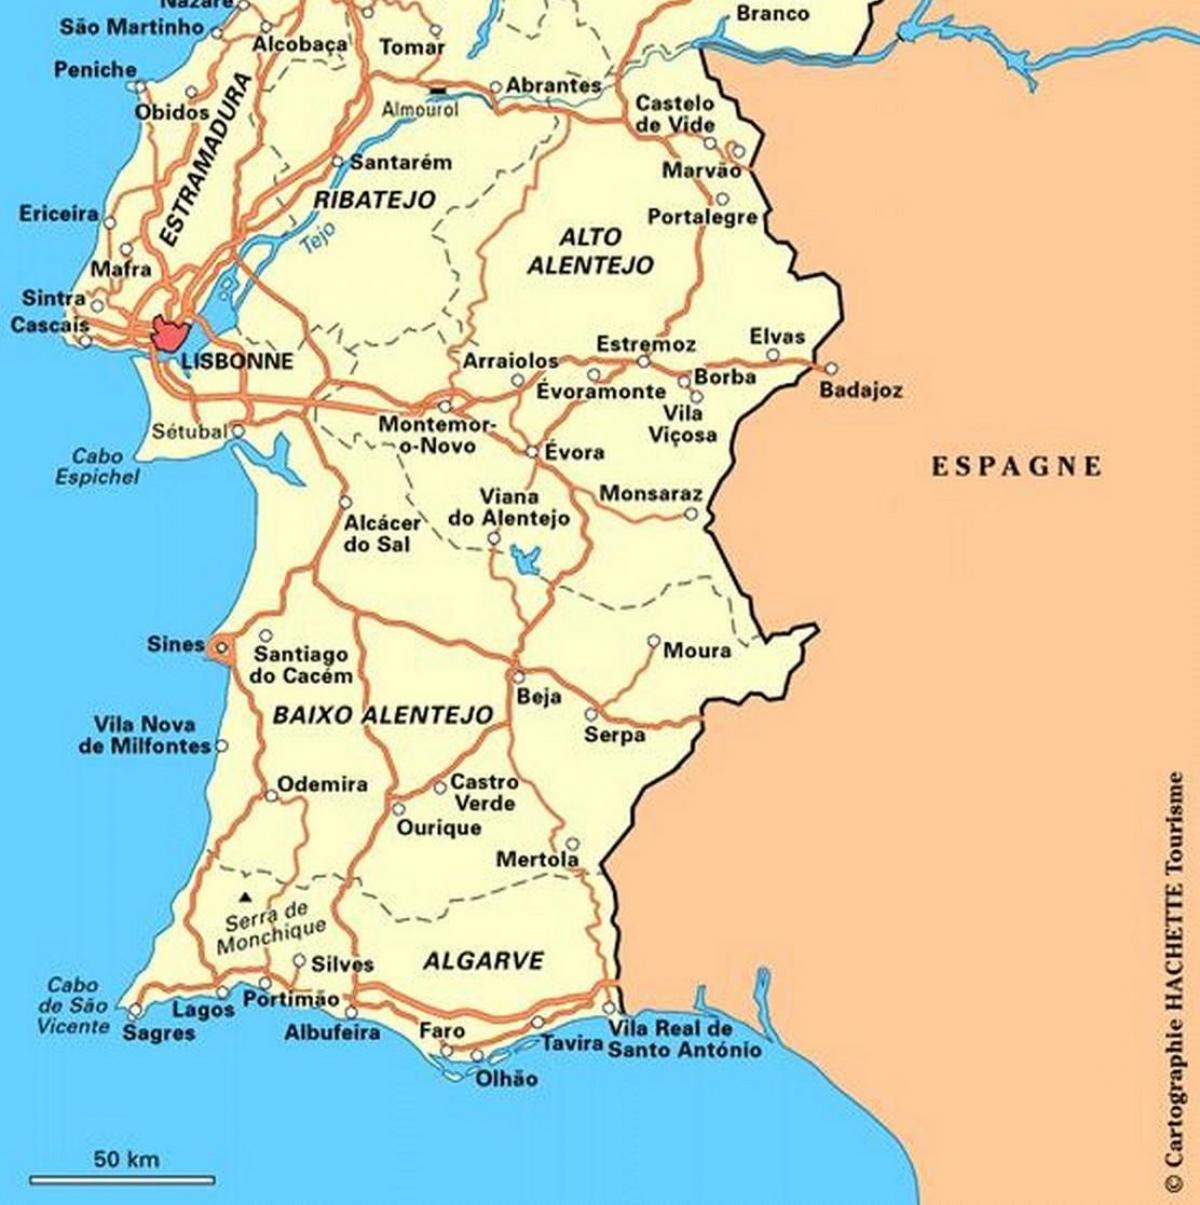 Mappa del Portogallo meridionale